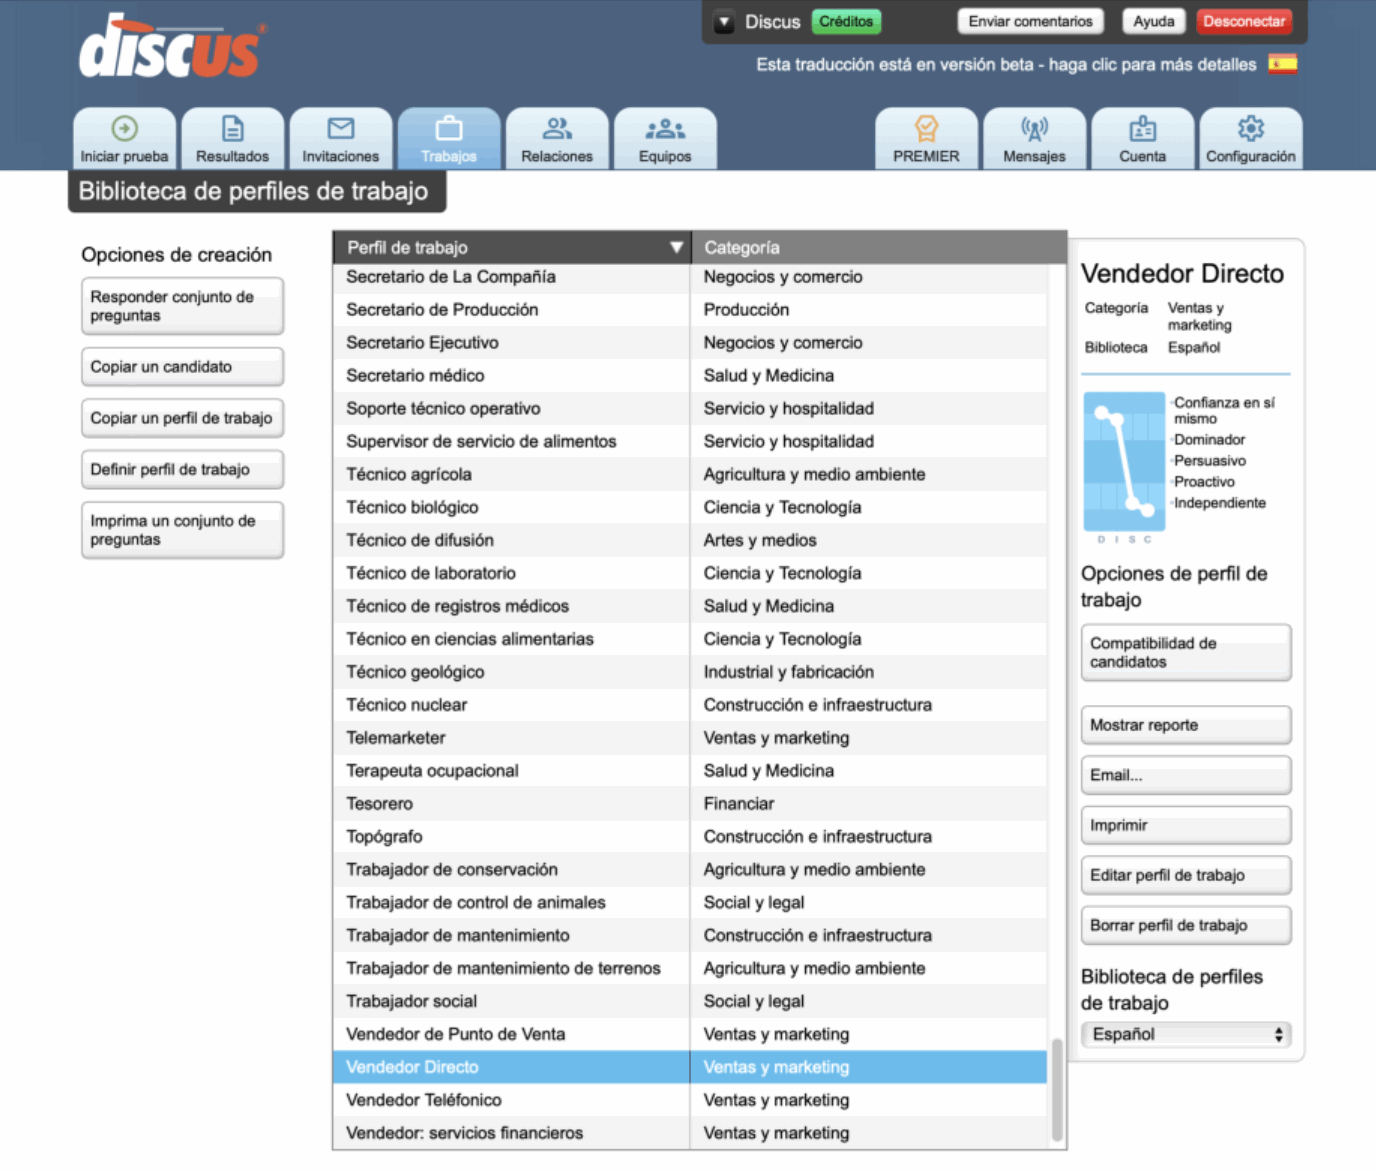 Captura de pantalla que muestra el rango de roles dentro de la biblioteca de perfiles de trabajo de Discus